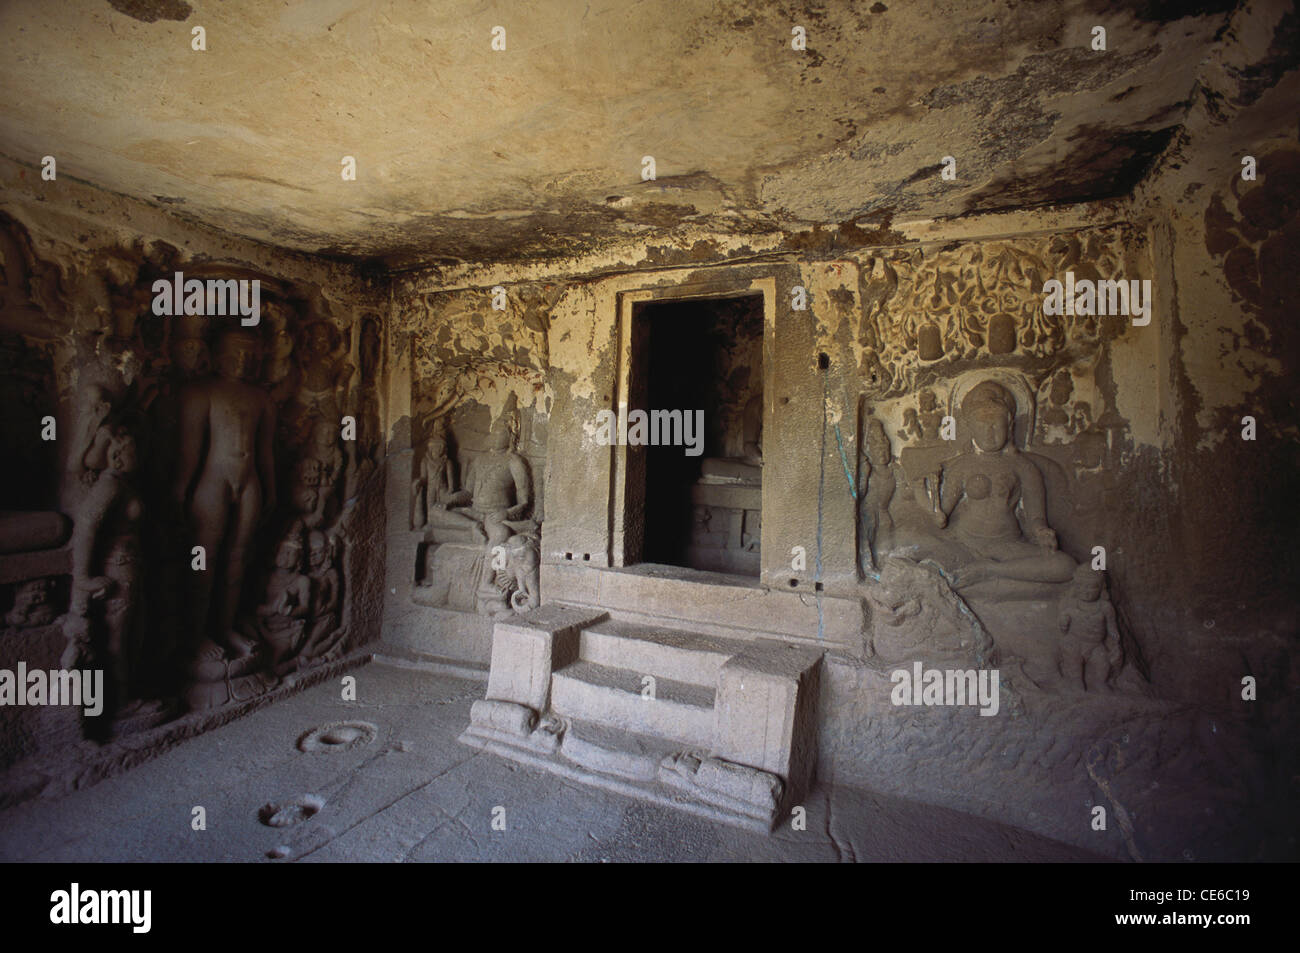 Grottes d'Ellora ; grotte d'Ellora numéro 33 ; site classé au patrimoine mondial de l'UNESCO ; plus grande grotte de temple de monastère à coupe de roche ; Aurangabad ; Maharashtra ; Inde ; Asie Banque D'Images